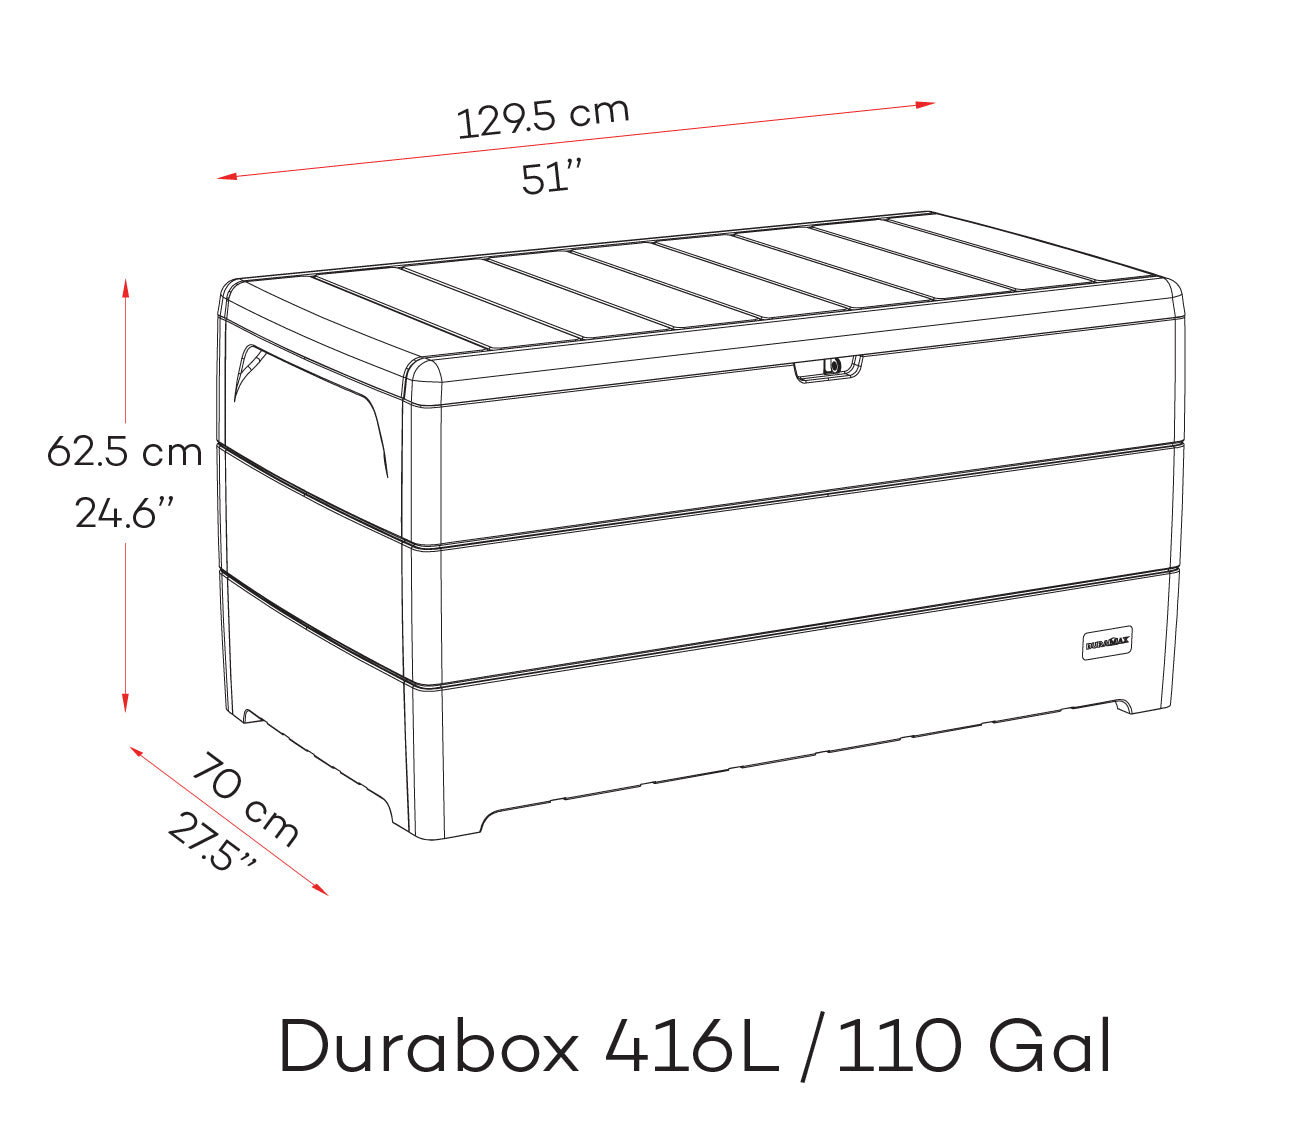 Duramax durabox, 416 L, storage box in dark brown.